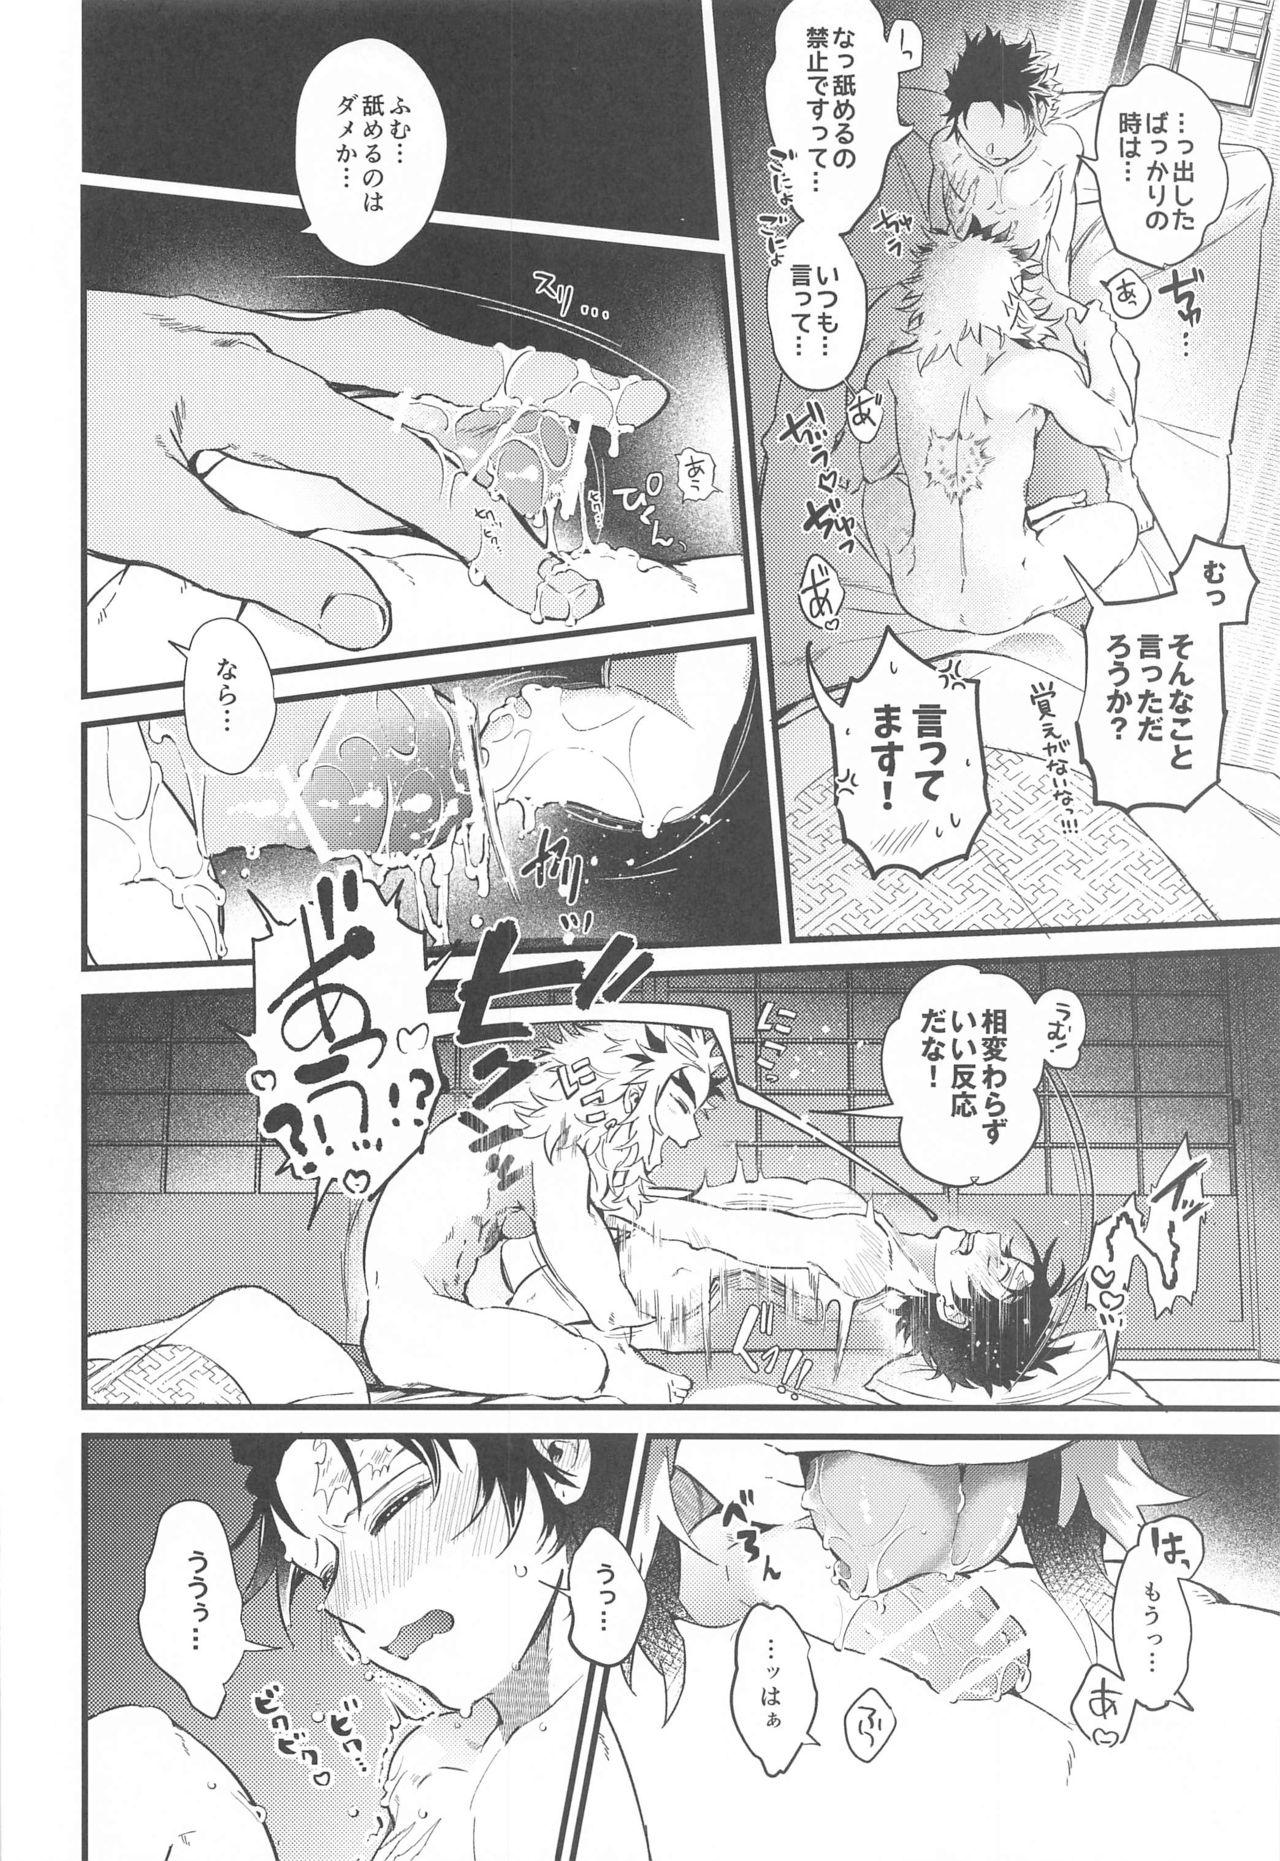 Wrestling sonokakushakunitokeru - Kimetsu no yaiba | demon slayer Cartoon - Page 7